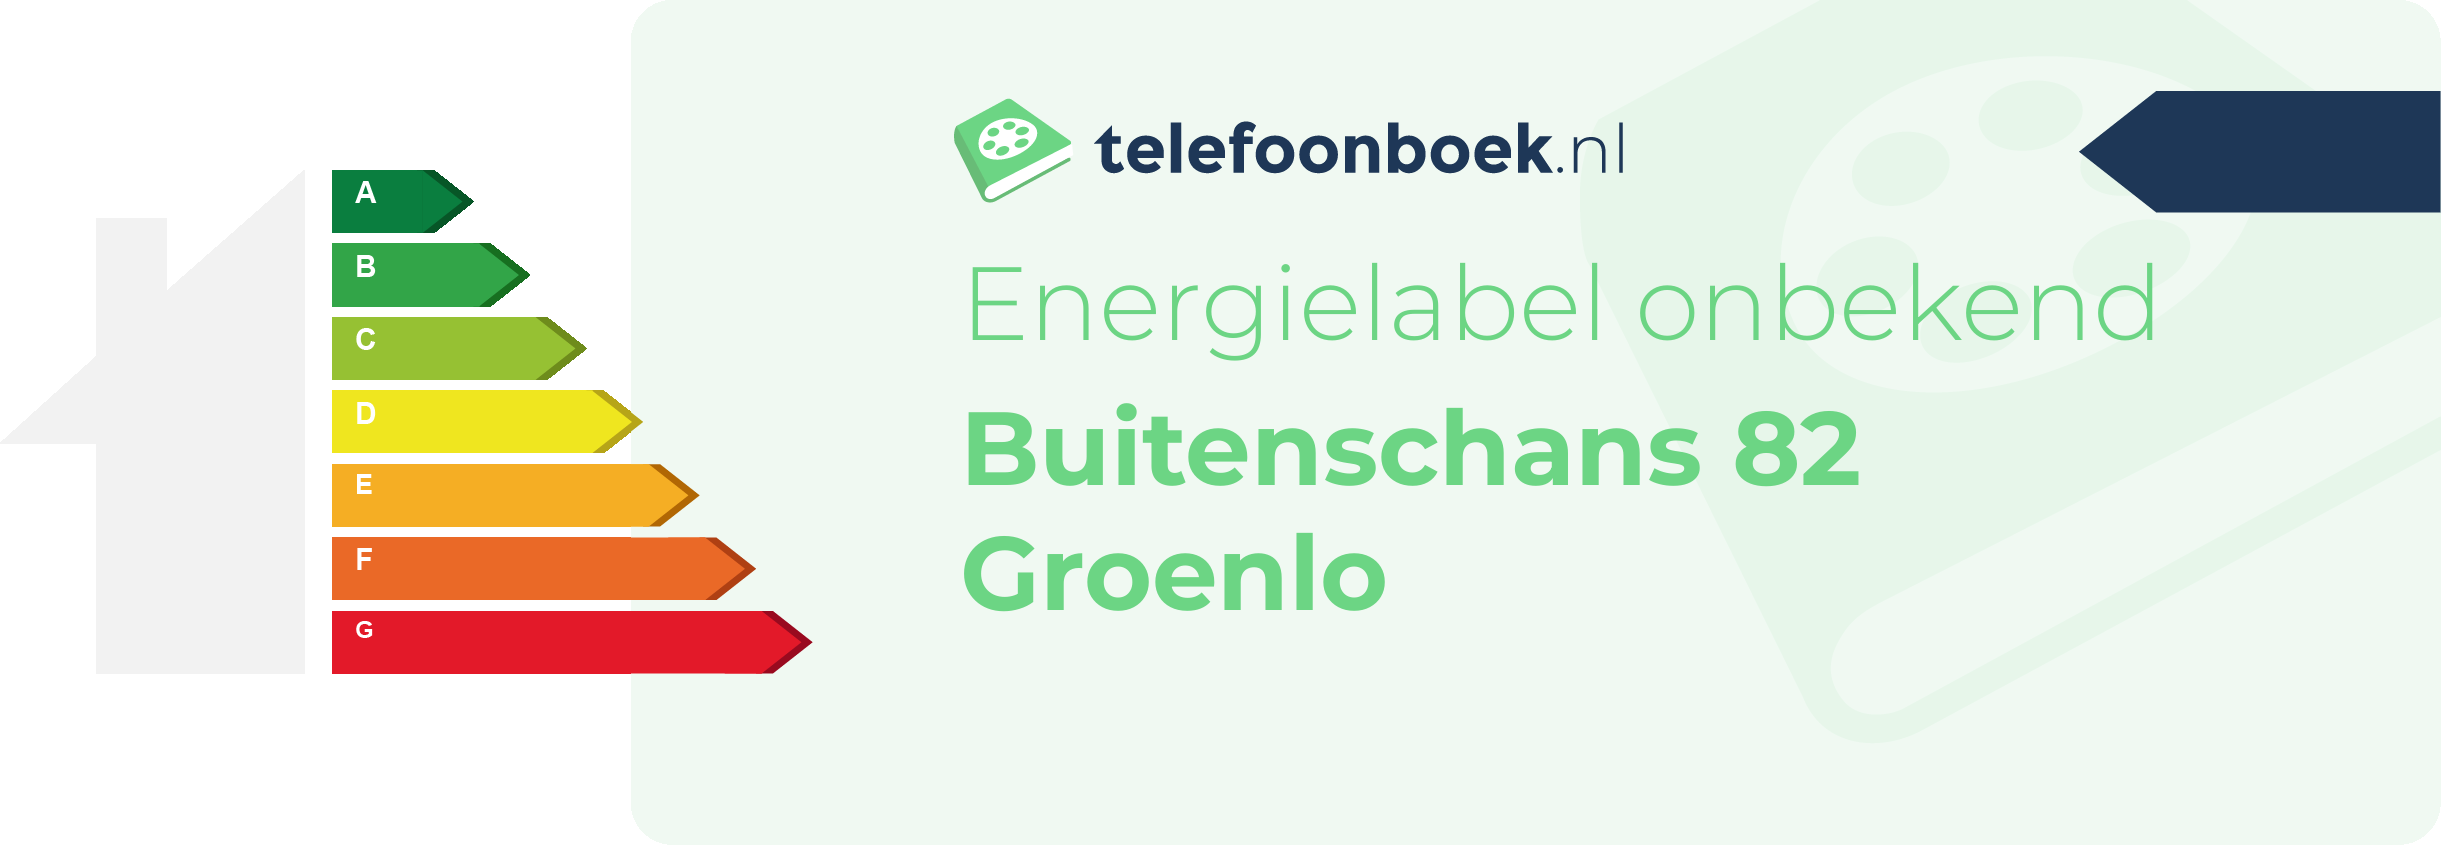 Energielabel Buitenschans 82 Groenlo